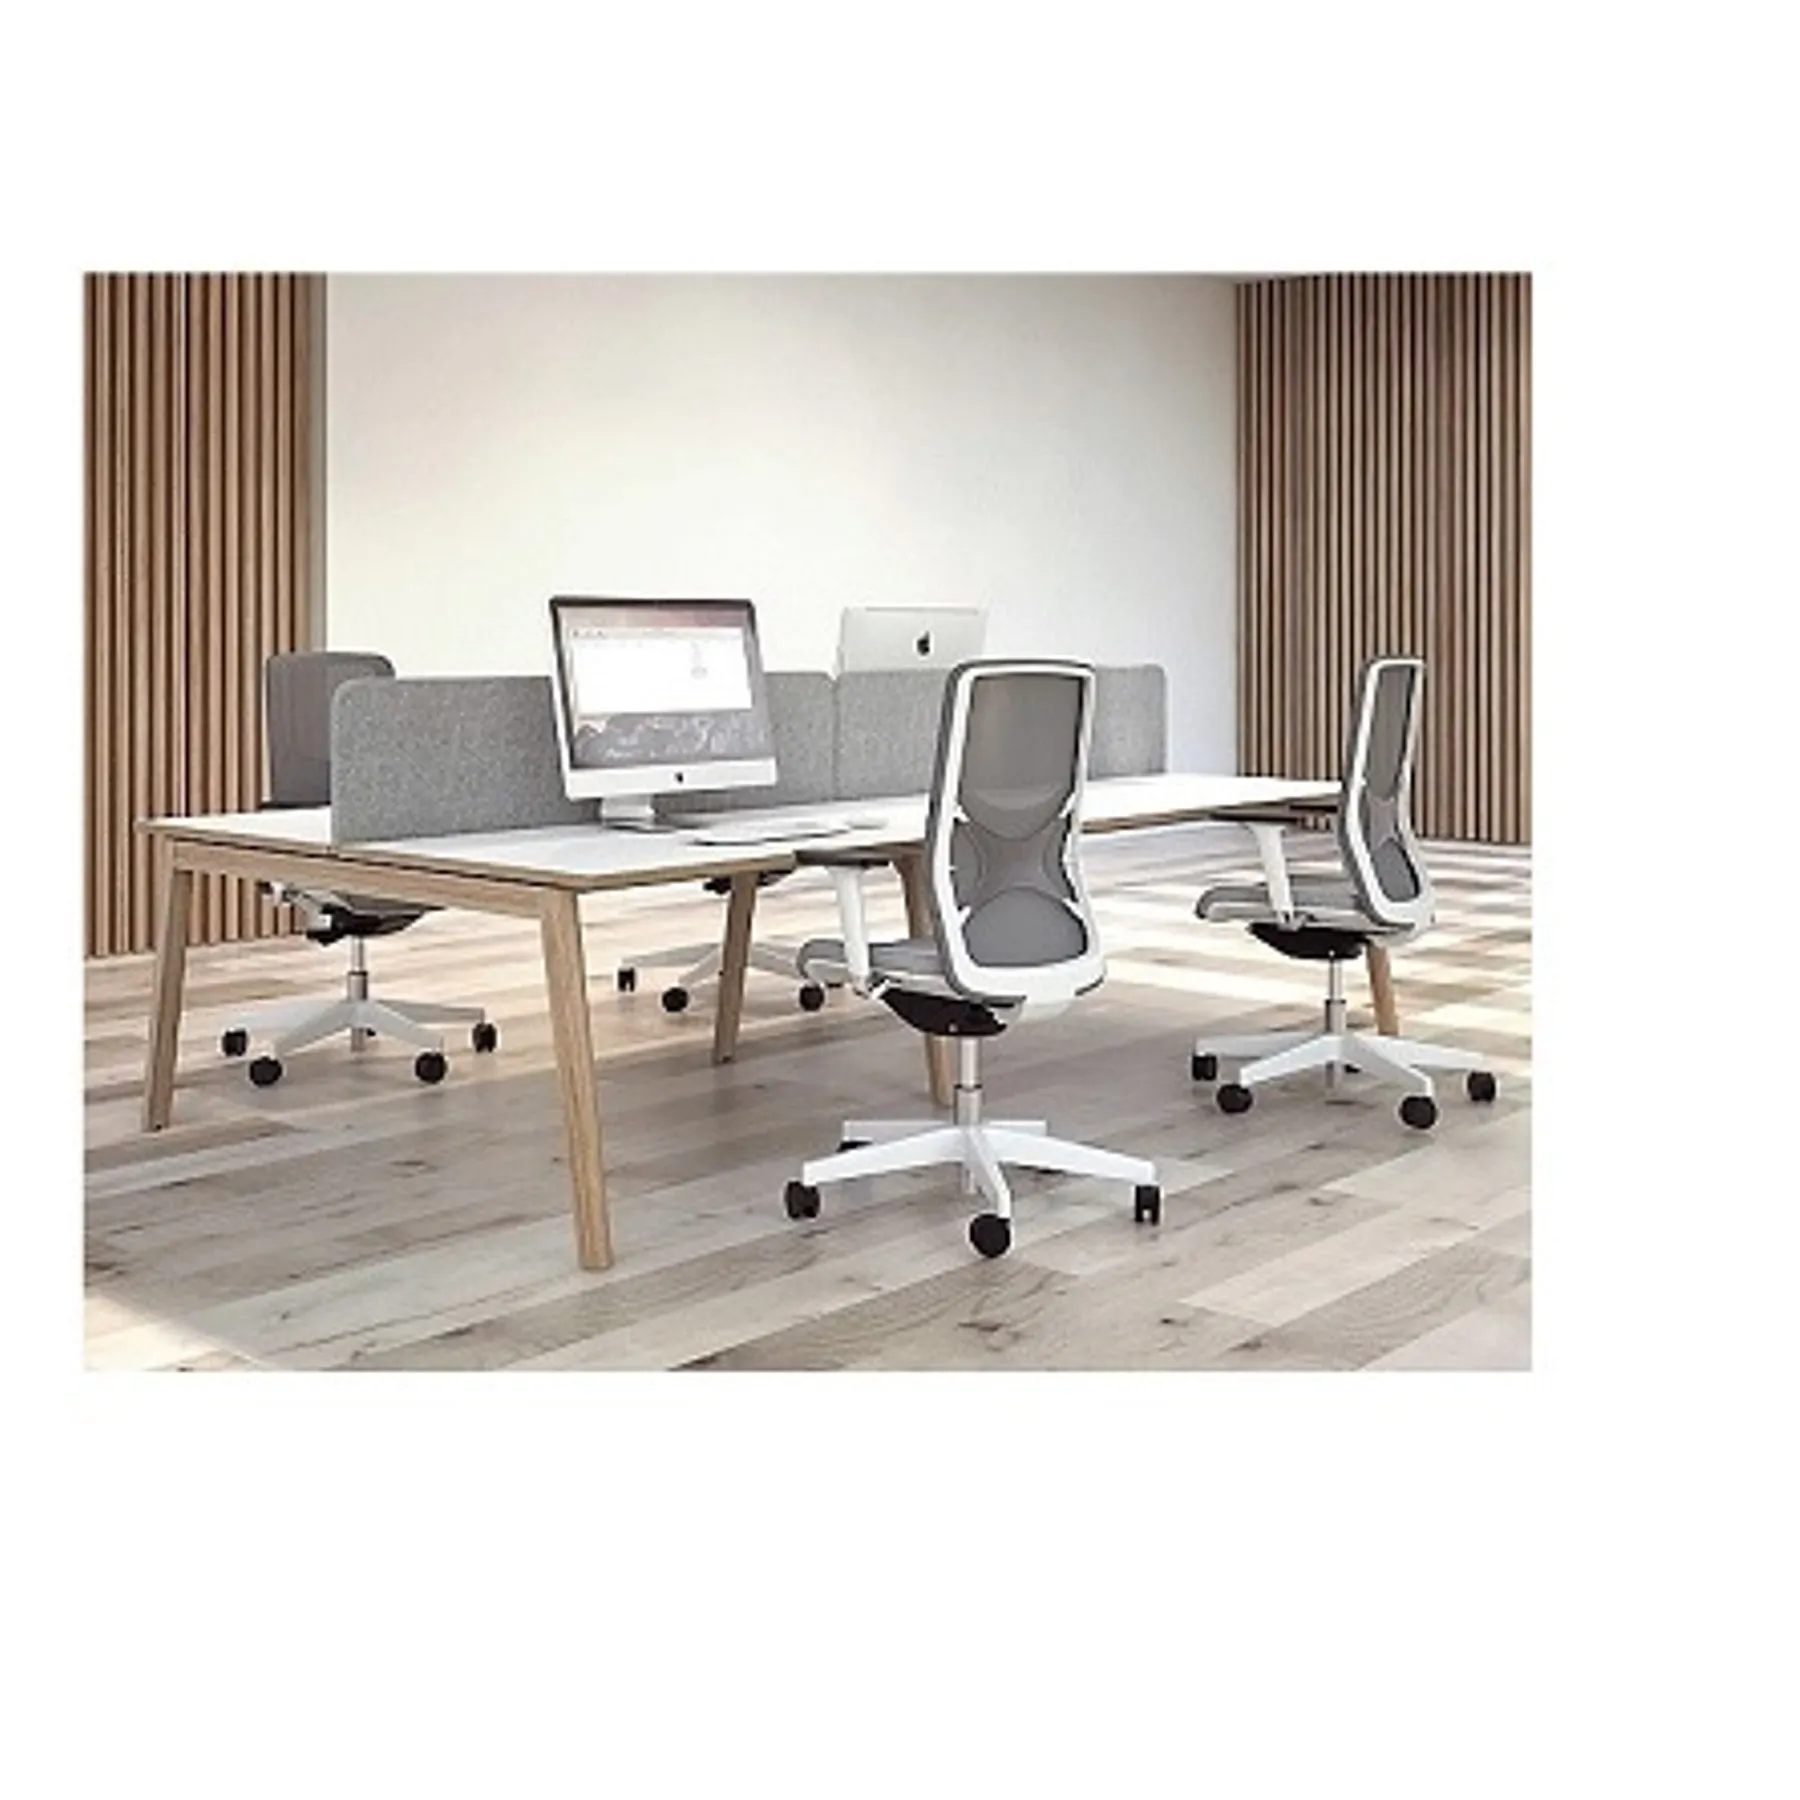 Lof Direct narbutas nova wood bench desks back to back white desks wooden legs roomset